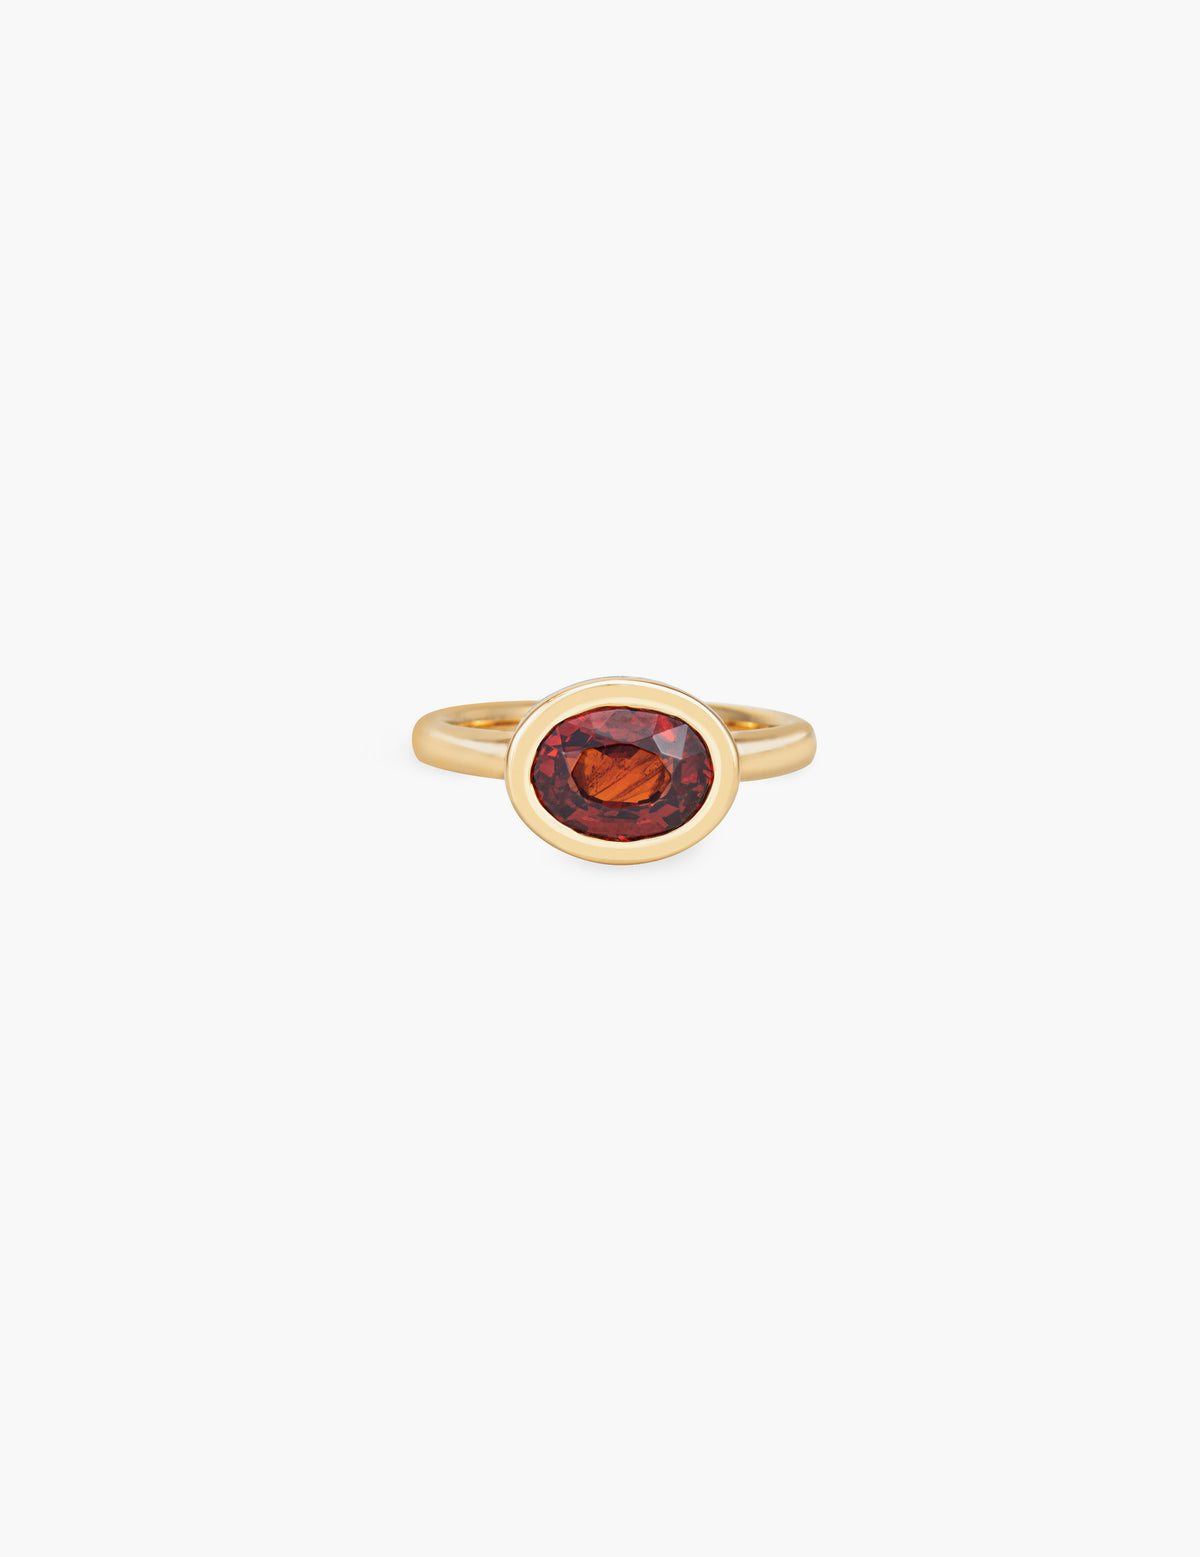 Spessartite Garnet Flower Enamel Ring